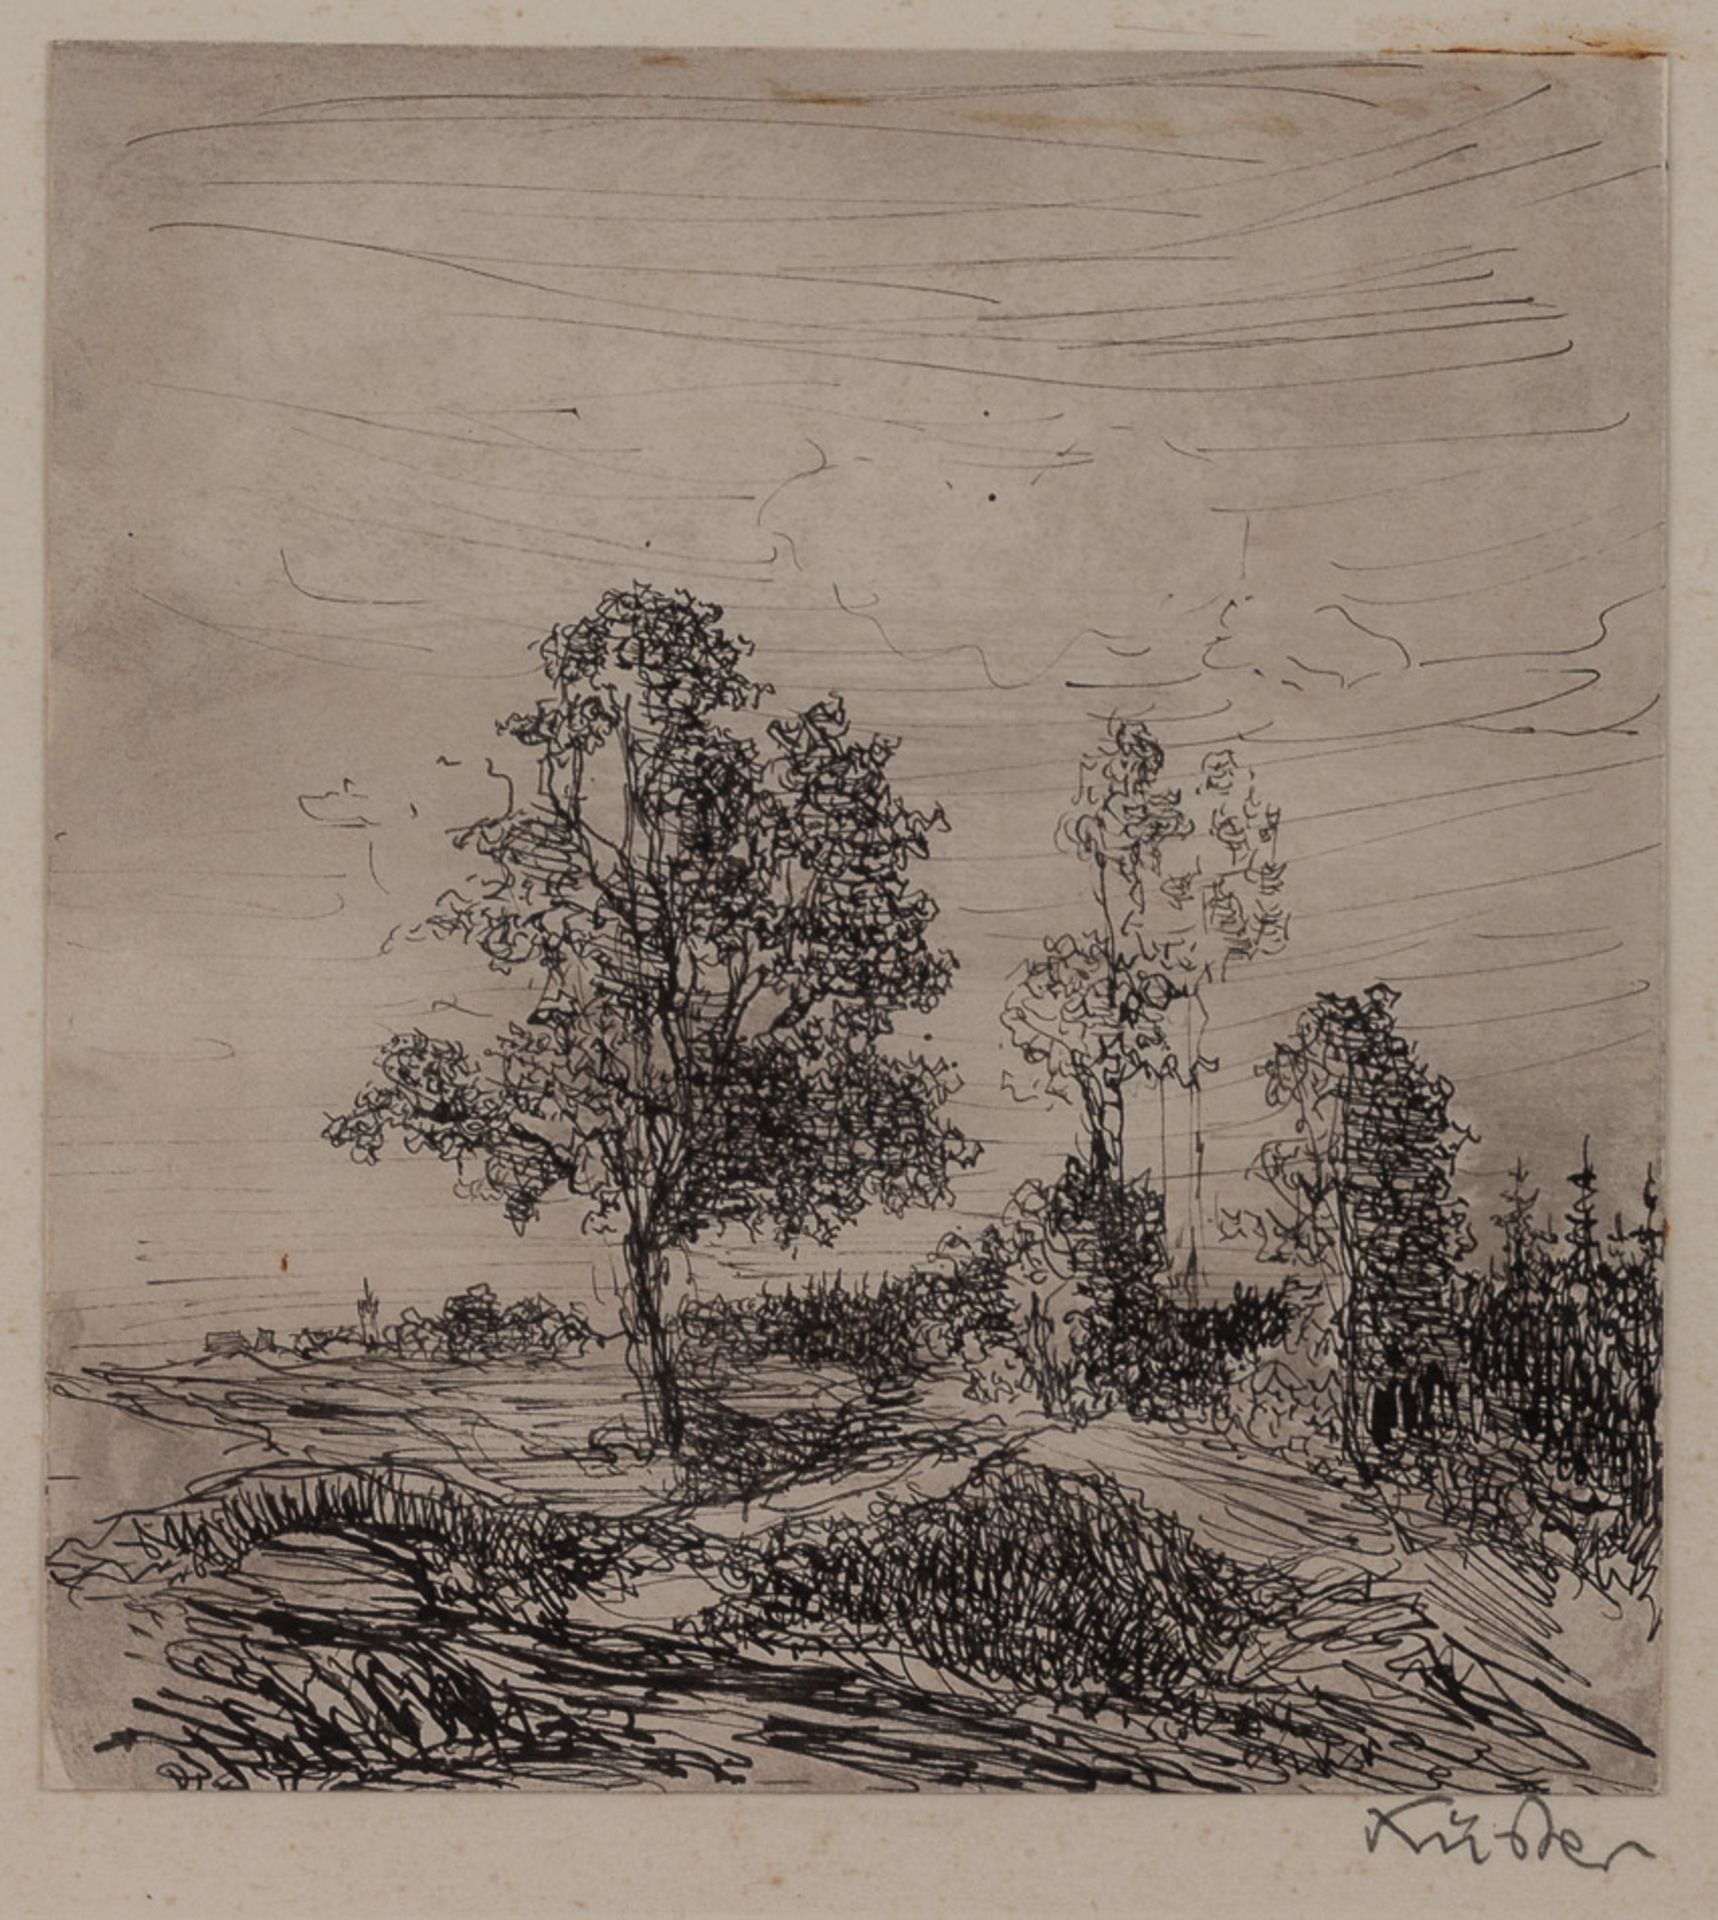 Baron von Küster 19./20. Jhd."Vilshofen"
Zeichnung, Tinte-Feder 14,5 cm x 13,5 cm,
rechts signiert